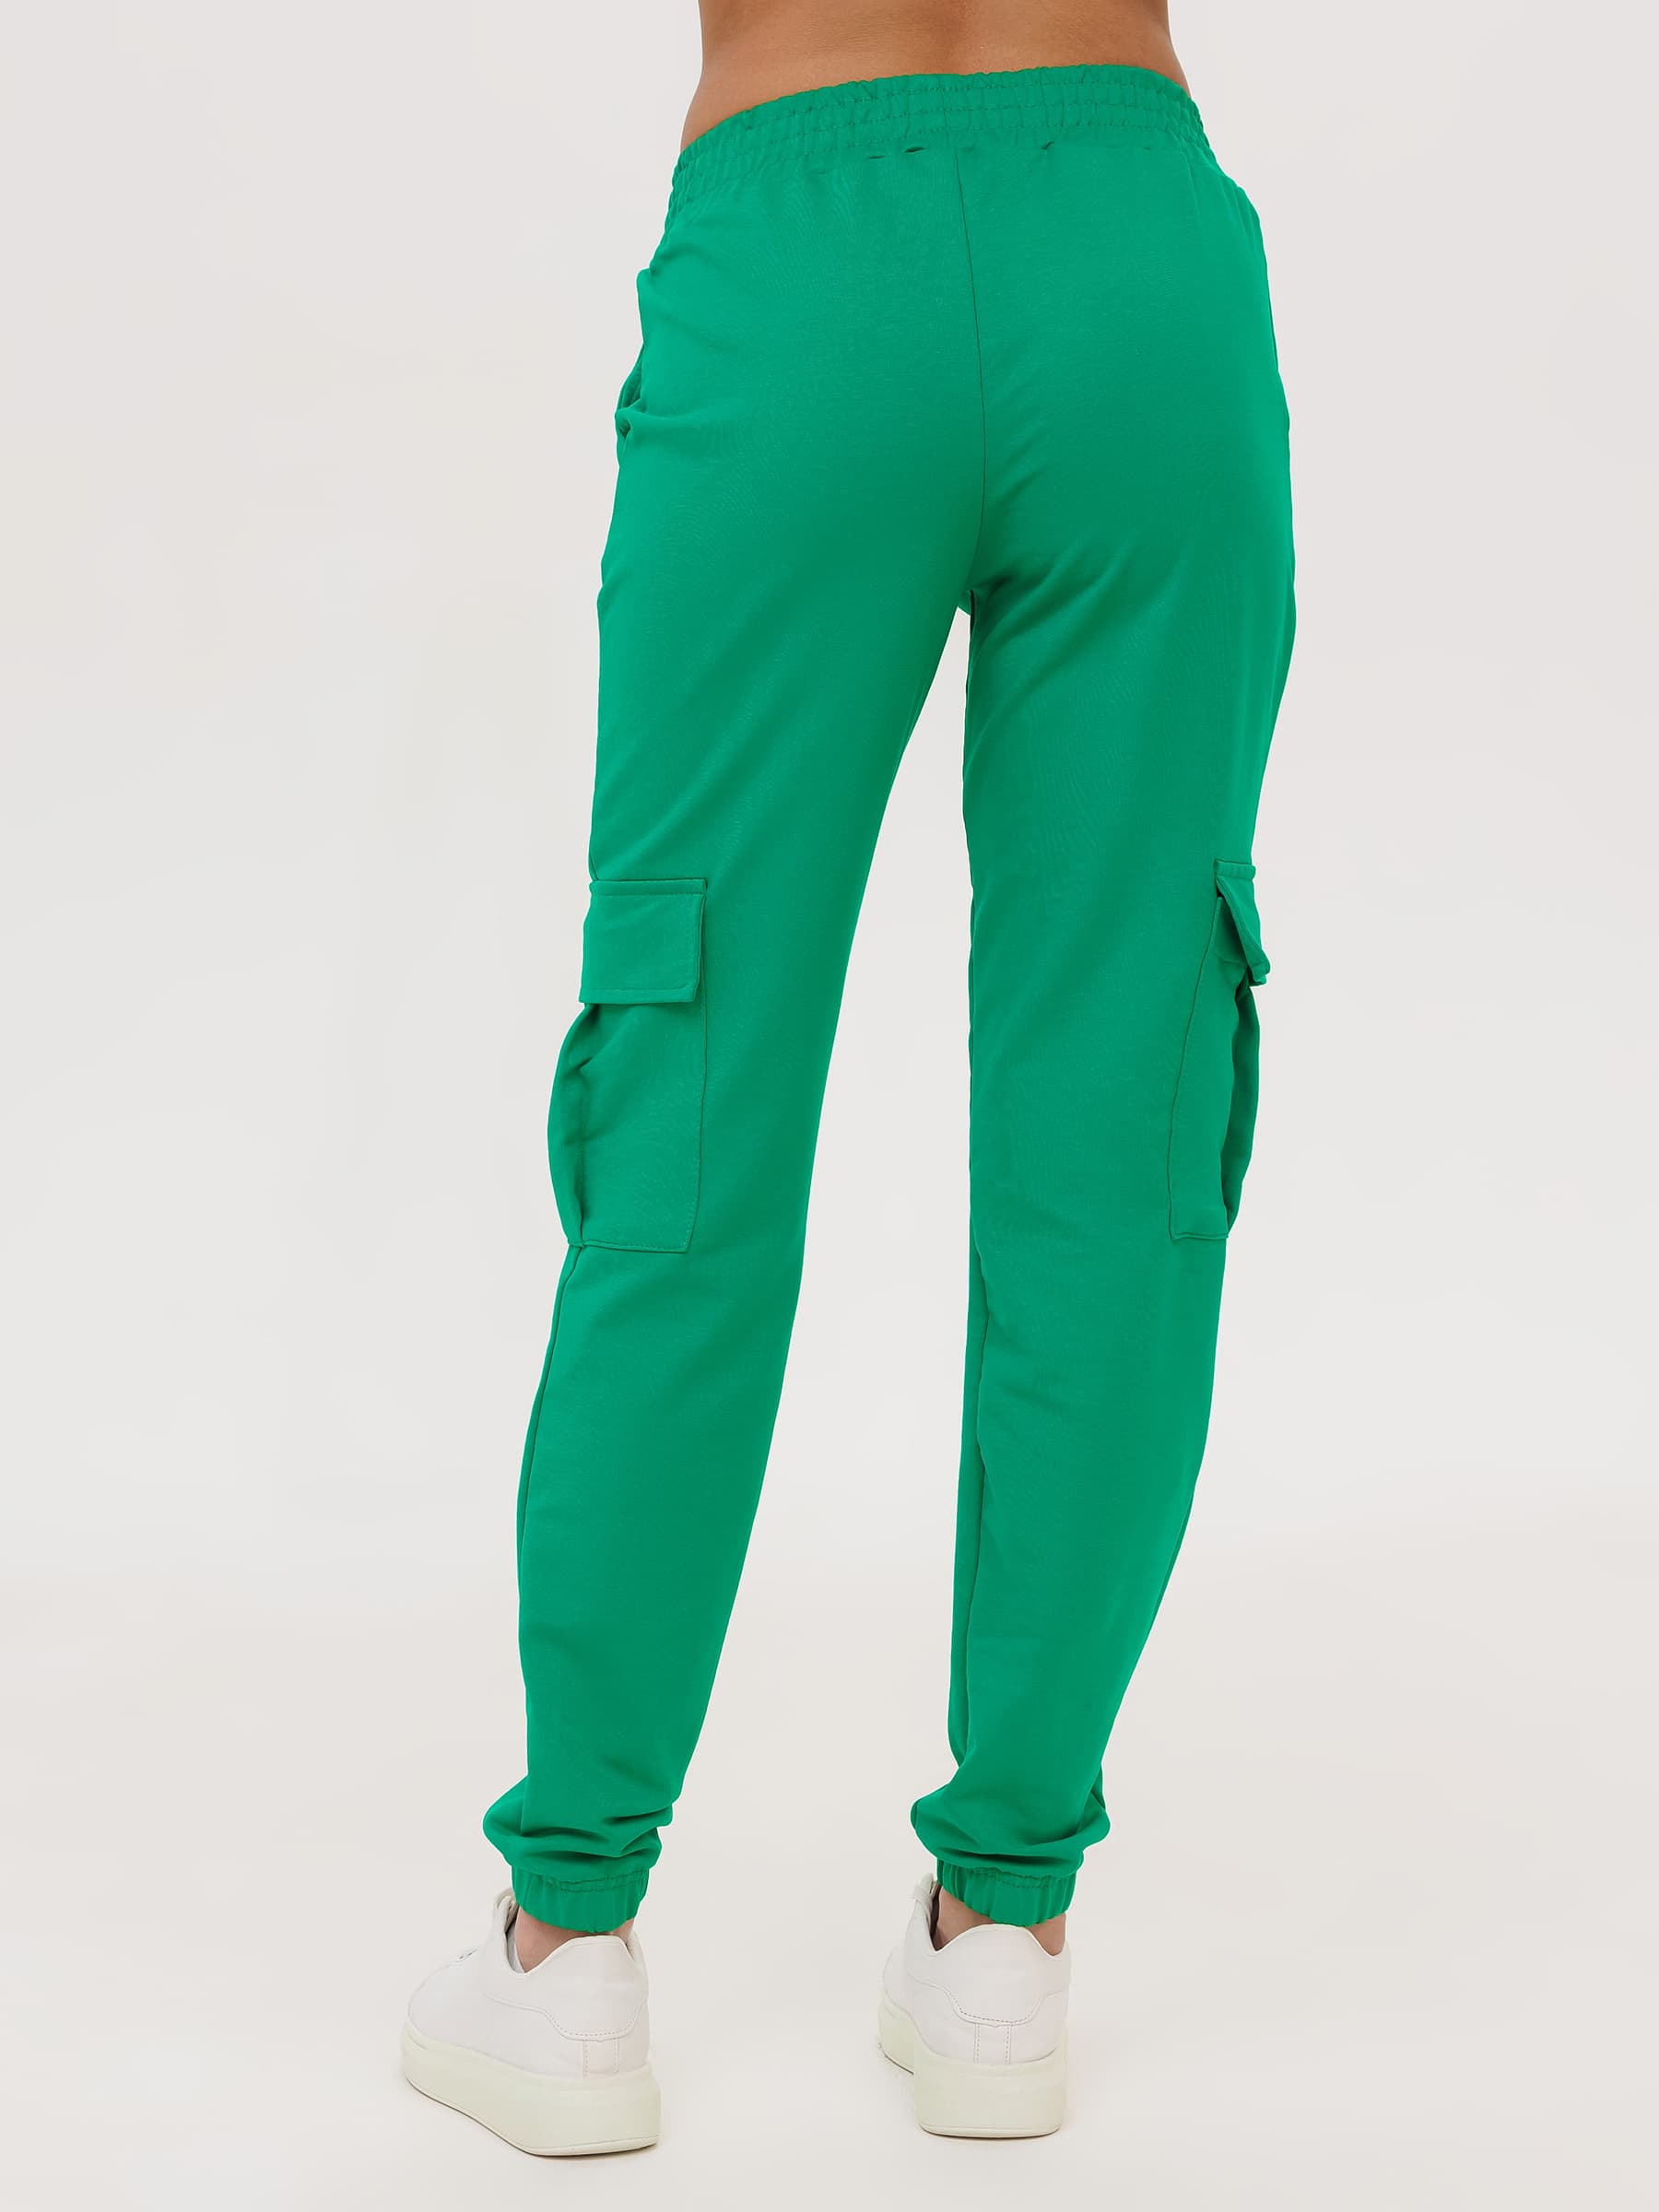 Жен. брюки повседневные арт. 23-0524 Зеленый р. 50 Моделлини, размер 50 - фото 10